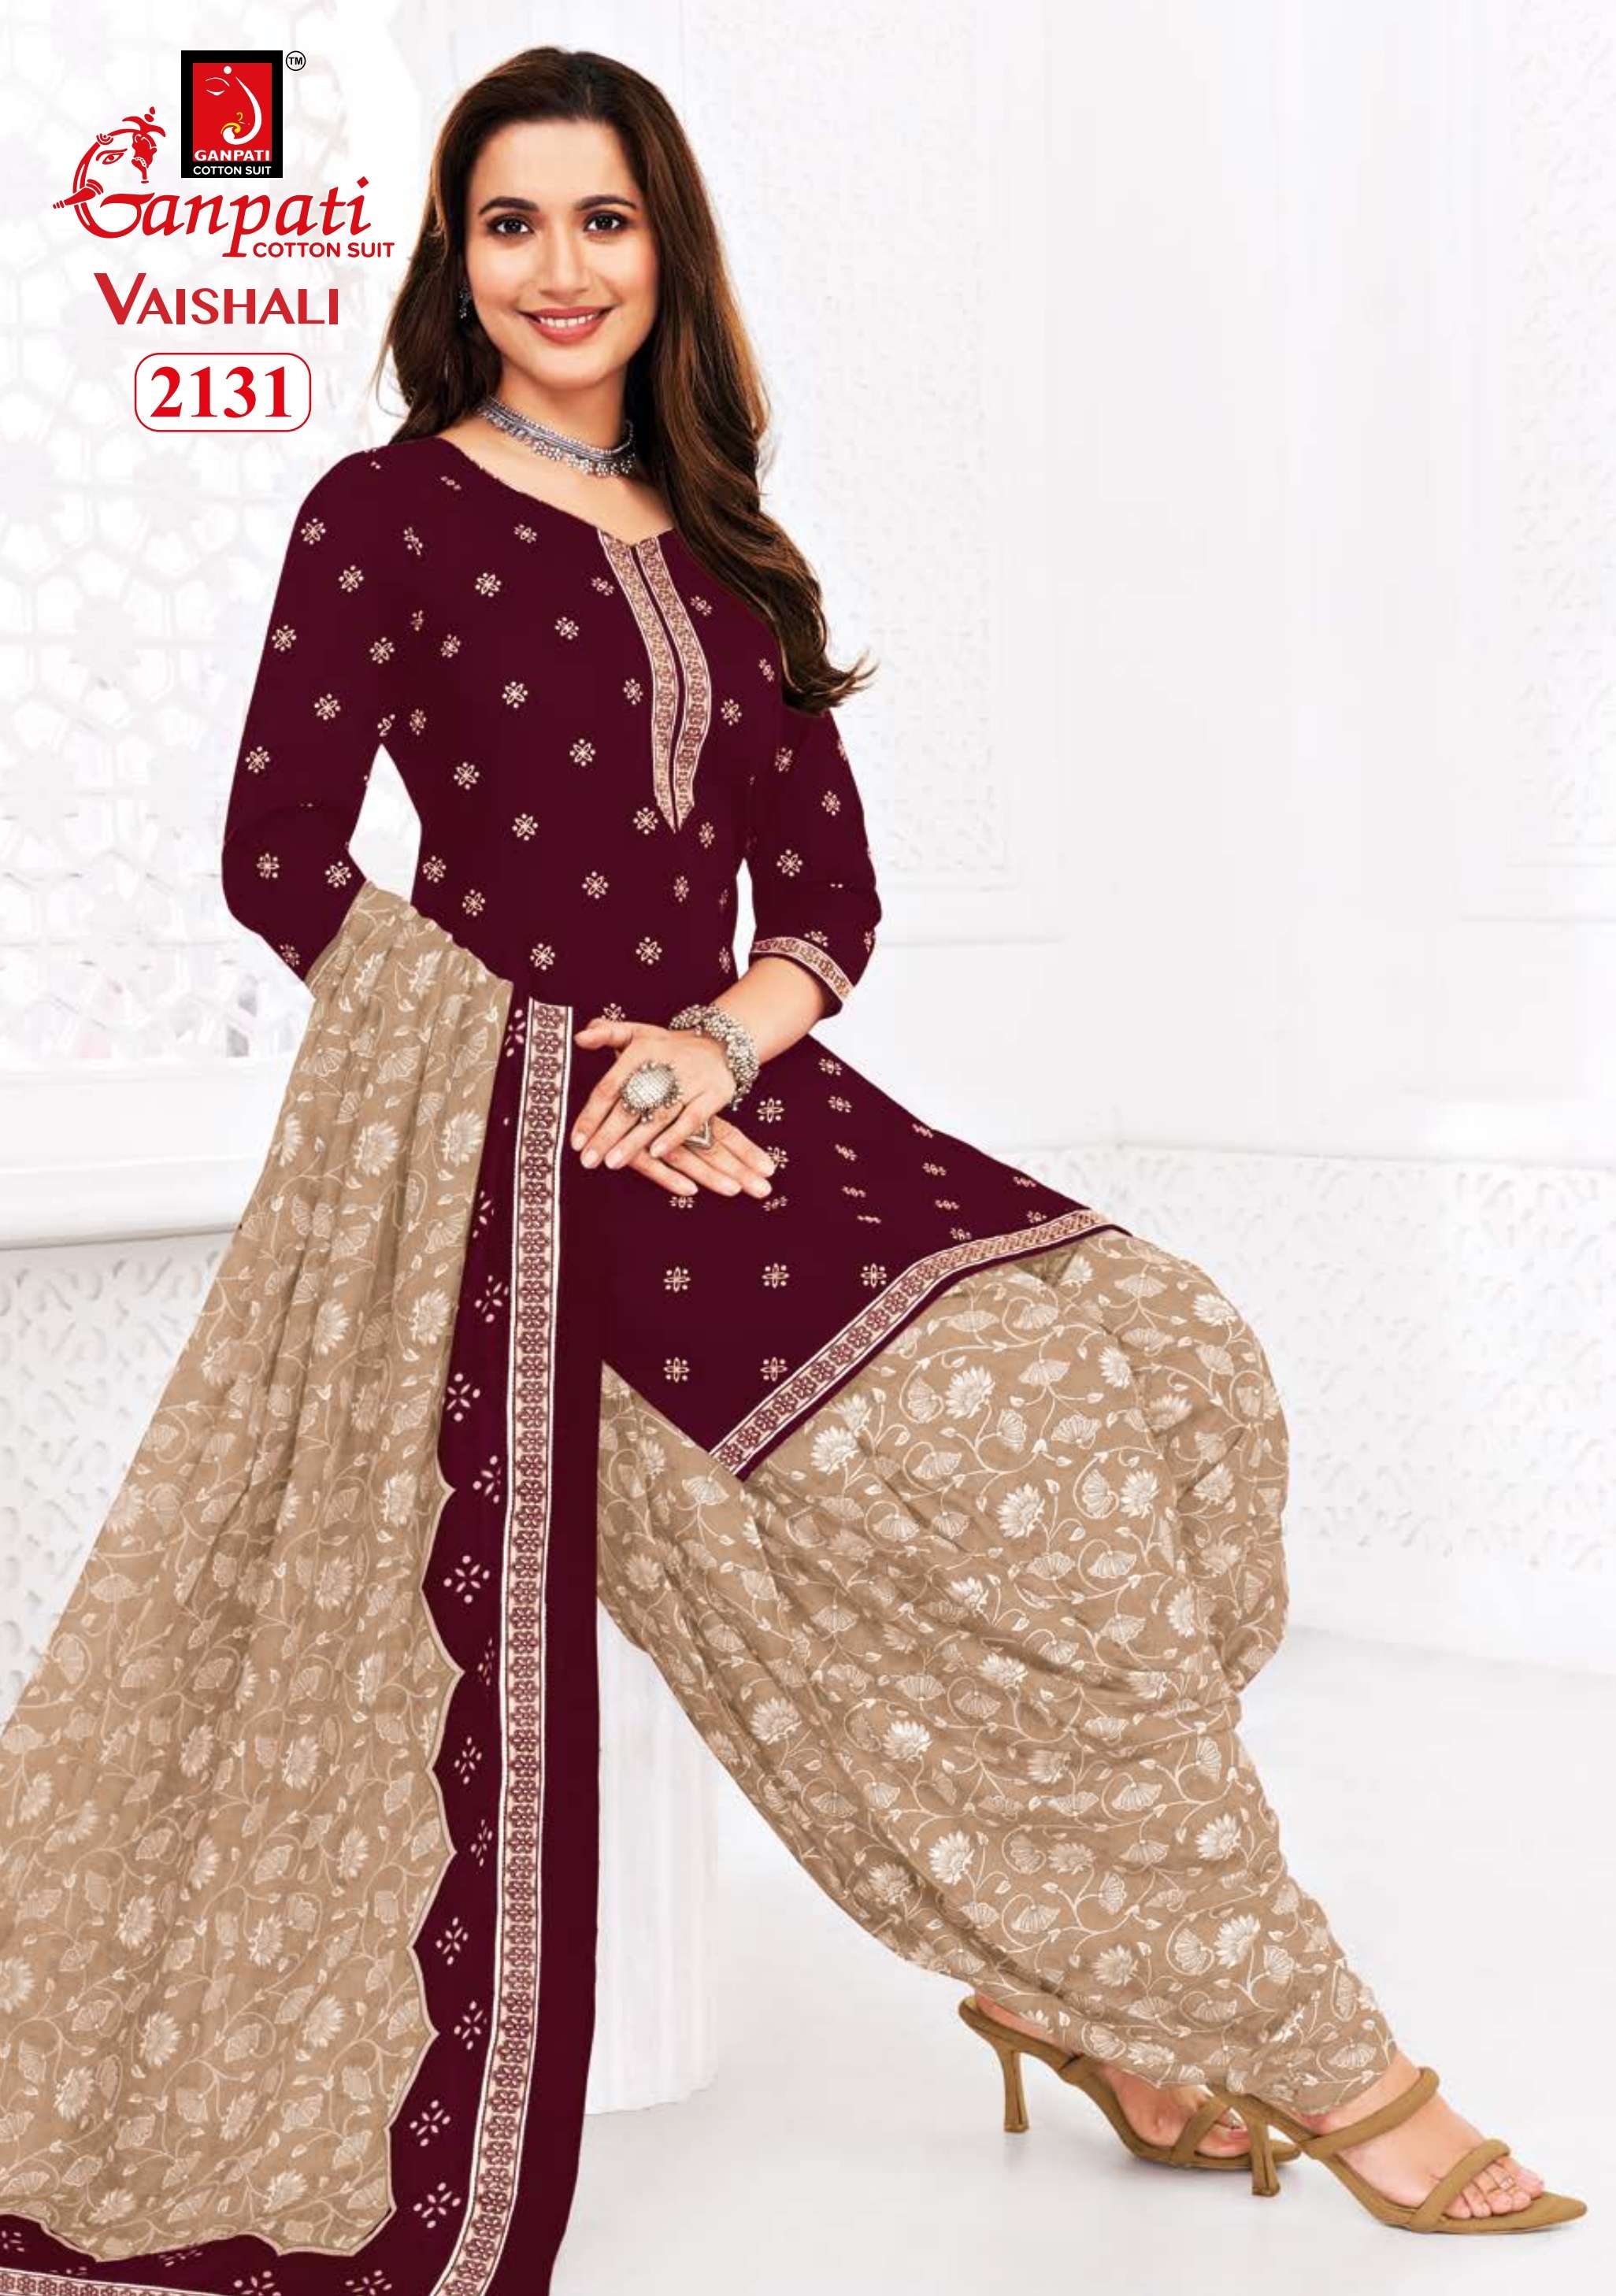 ganpati cotton suits vaishali patiyala vol-7 series patiyala cotton stitched salwar kameez wholesaler surat gujarat